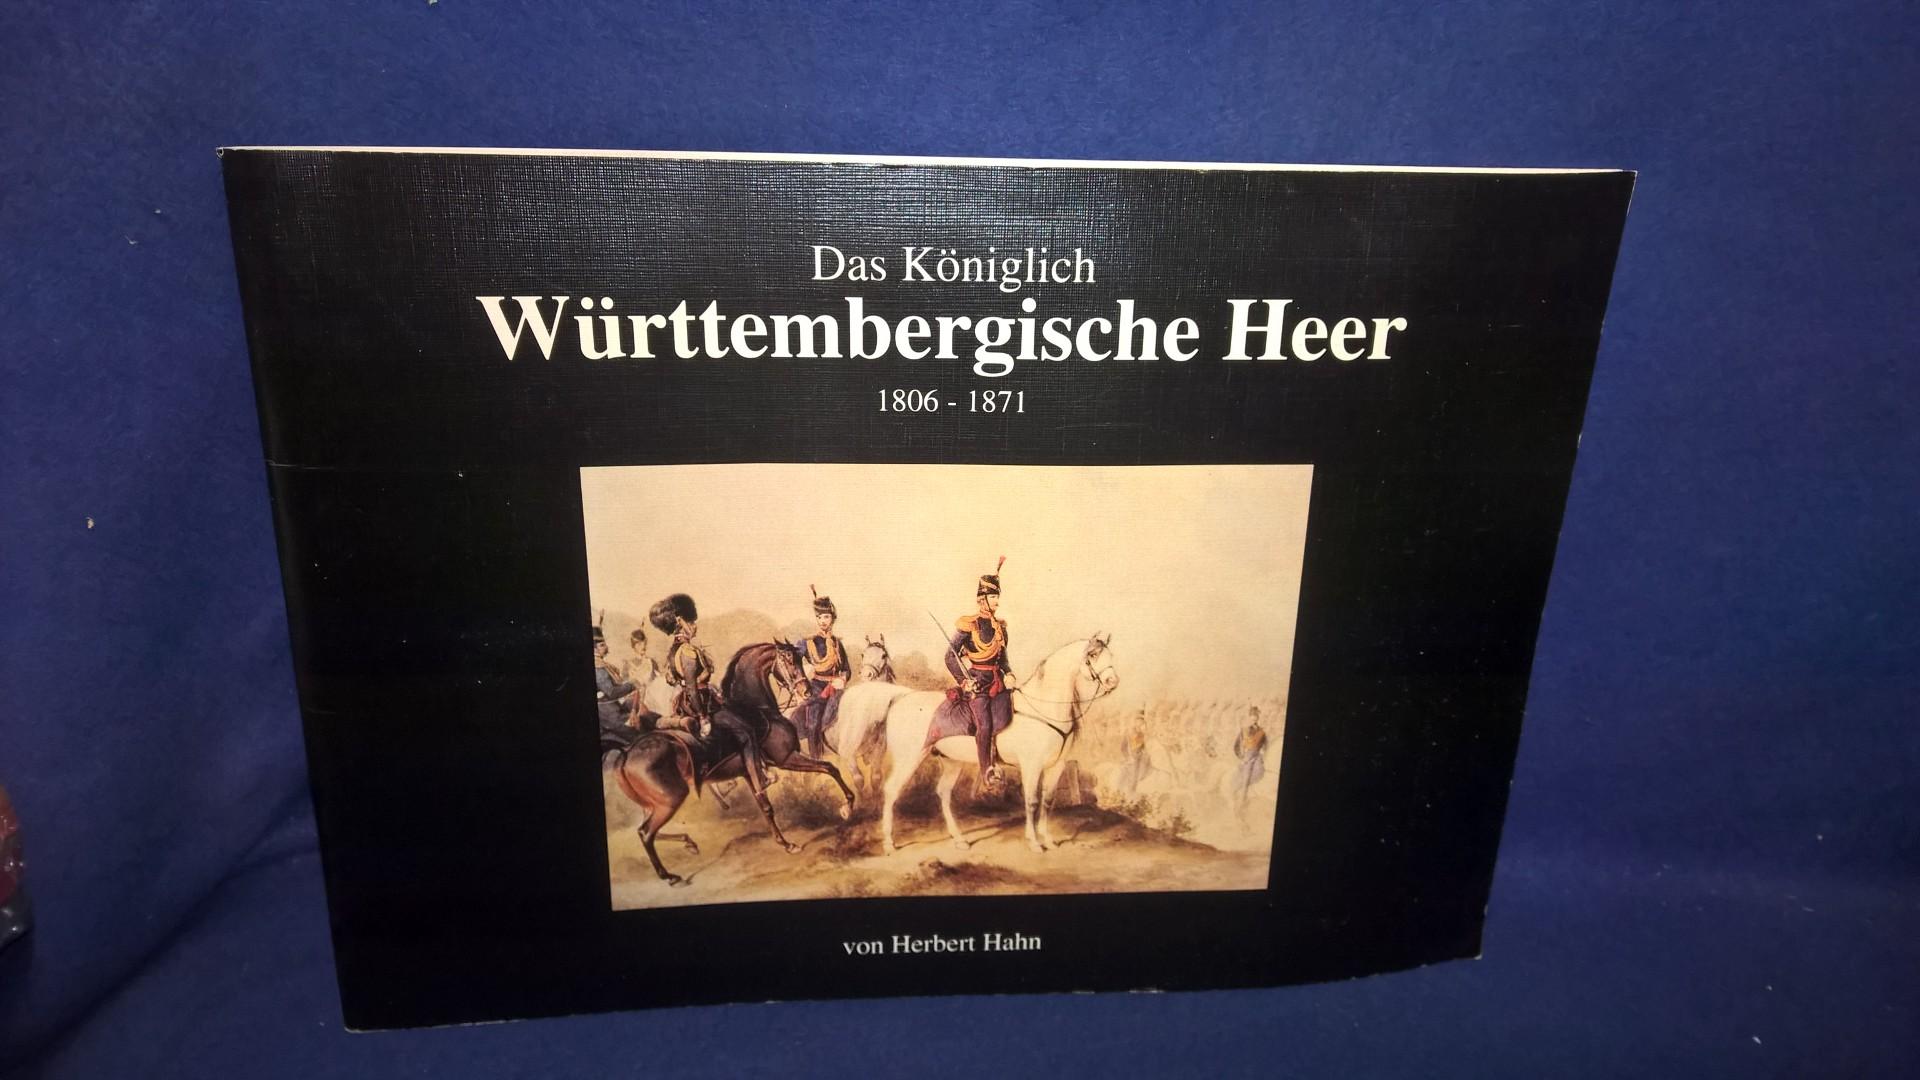 Das Königlich Württembergische Heer 1806 - 1871.